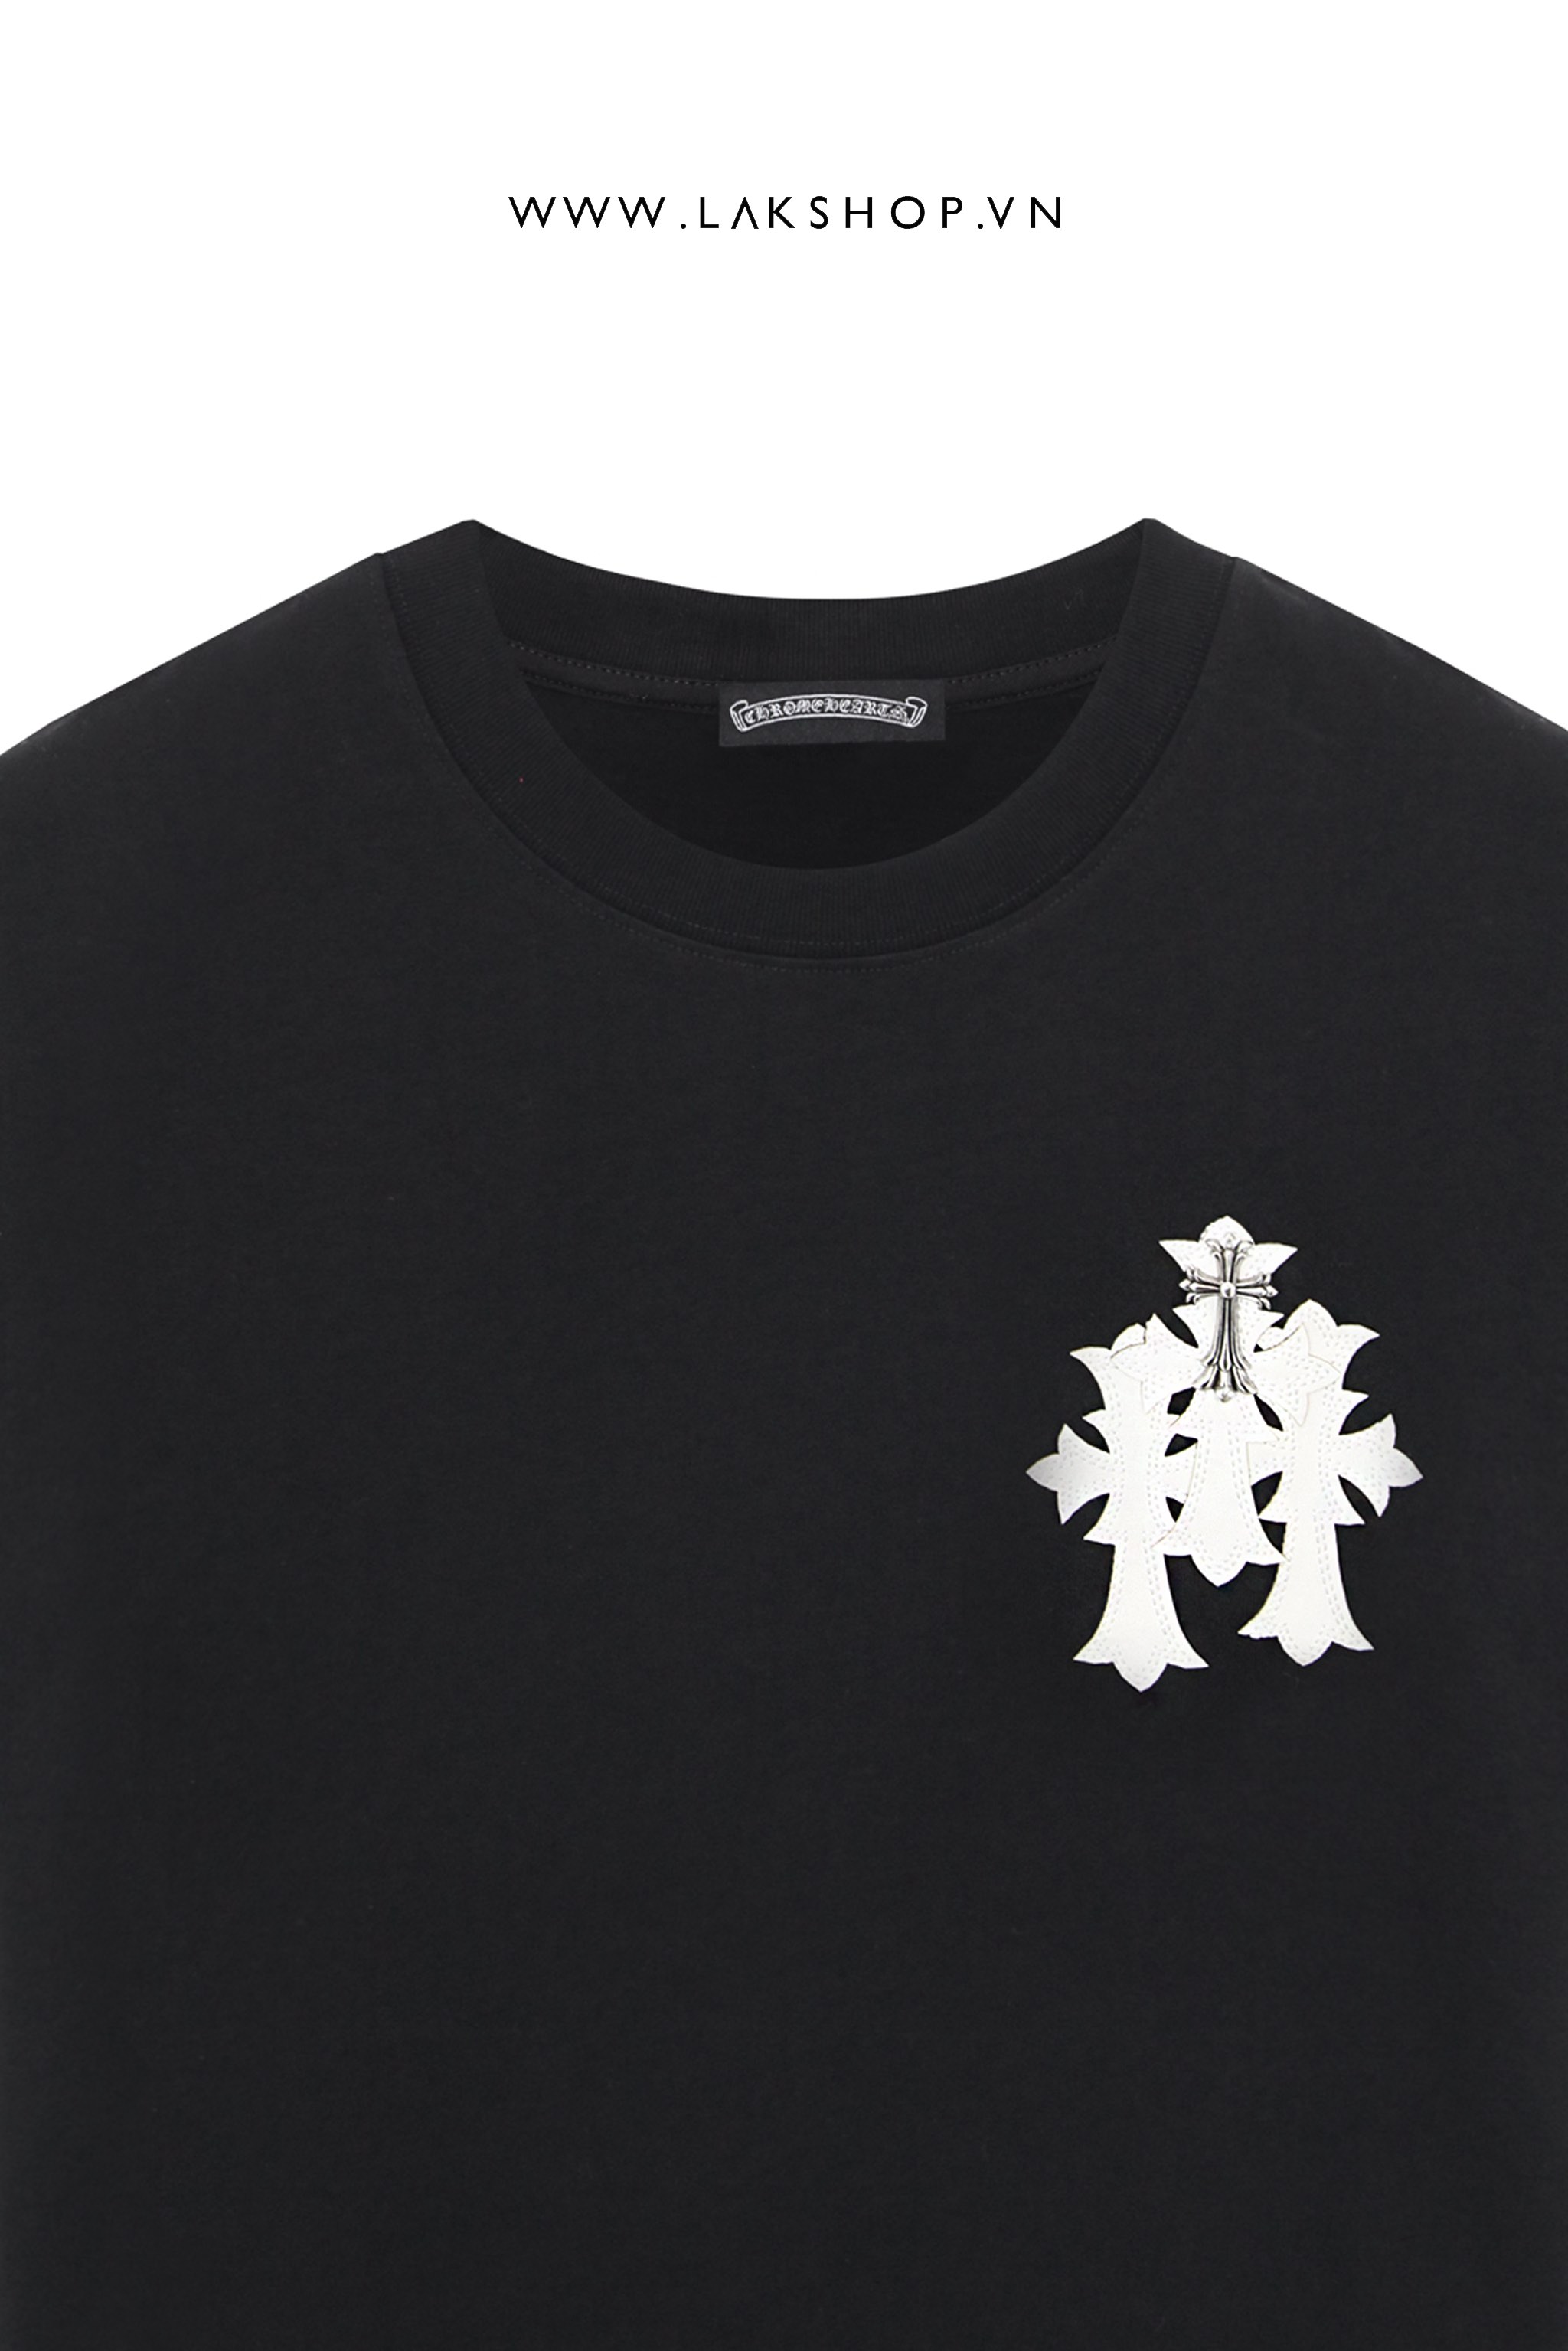 Chr0me Heart Black with Cross Big Logo T-shirt